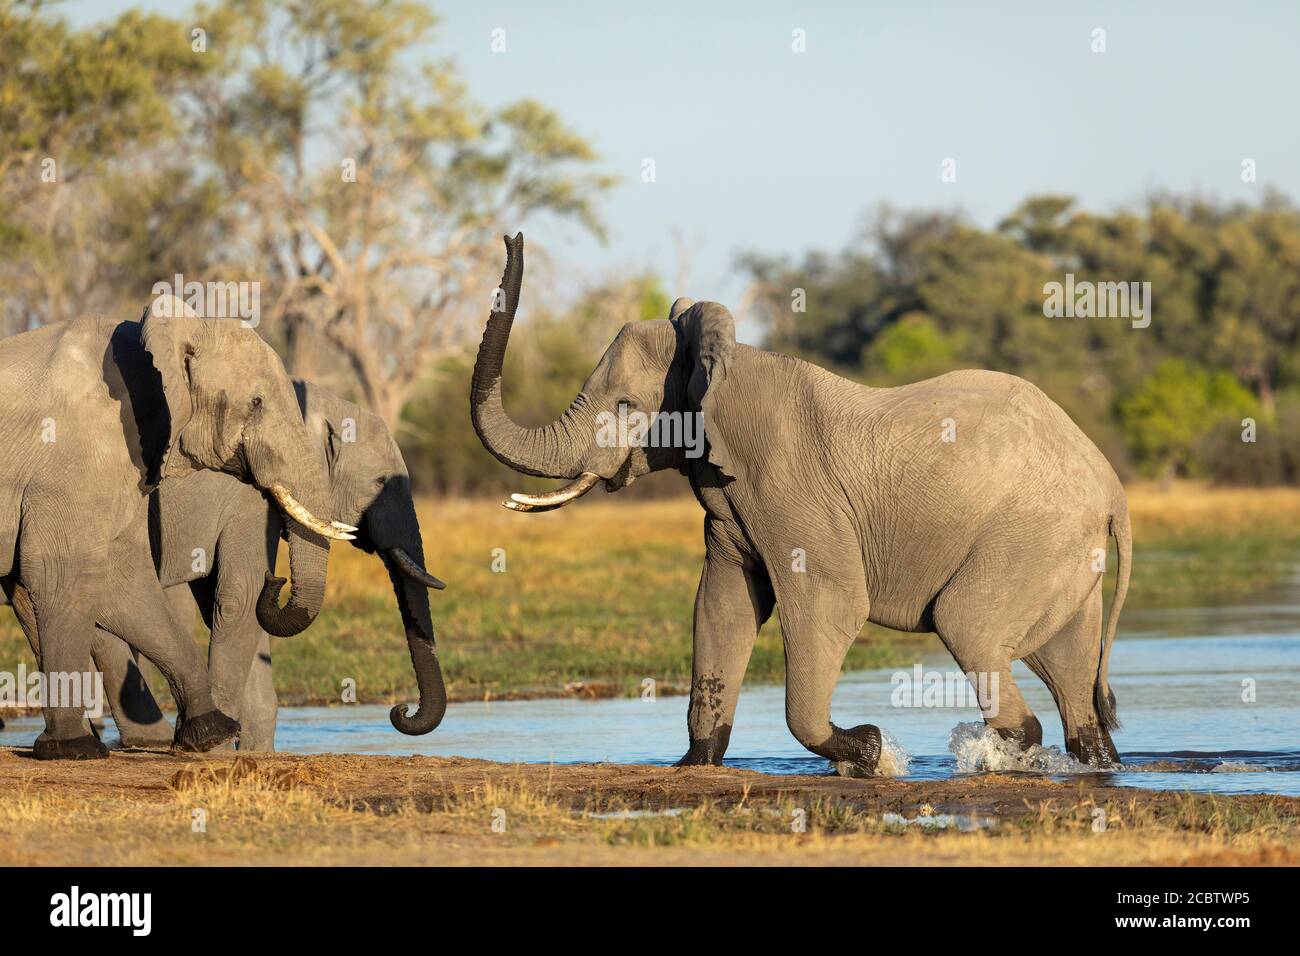 Les éléphants buvant debout au bord de l'eau dans la lumière du soleil jaune chaude Dans le delta du Botswana de Khwai Okavango Banque D'Images